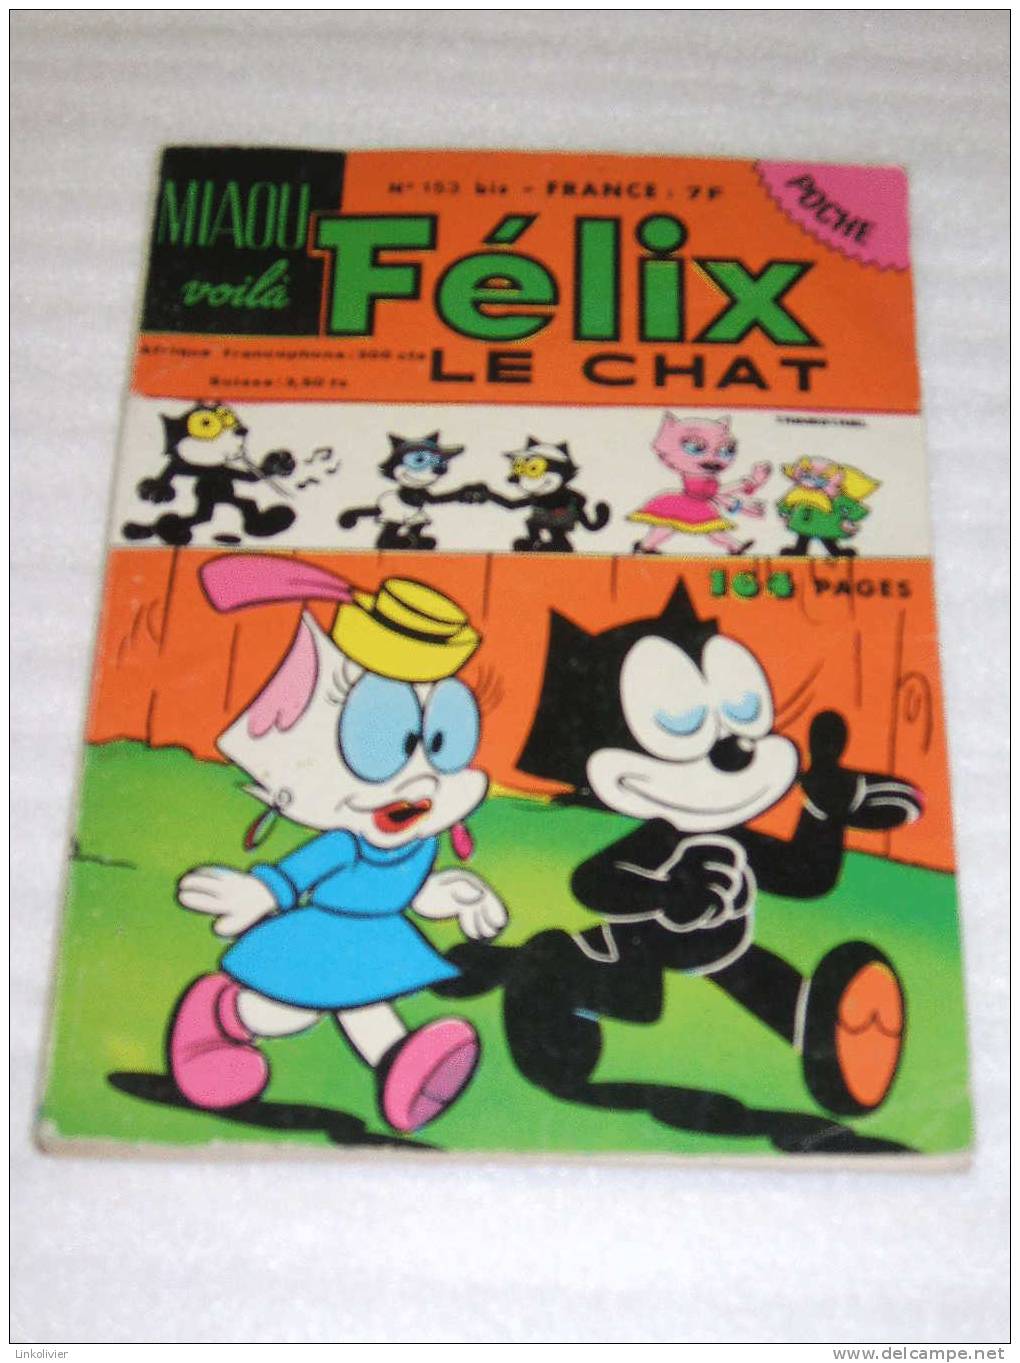 FELIX LE CHAT Miaou Voilà - Poche N° 153 Bis -Sarl Dynamisme Presse Edition 1982 - Félix De Kat